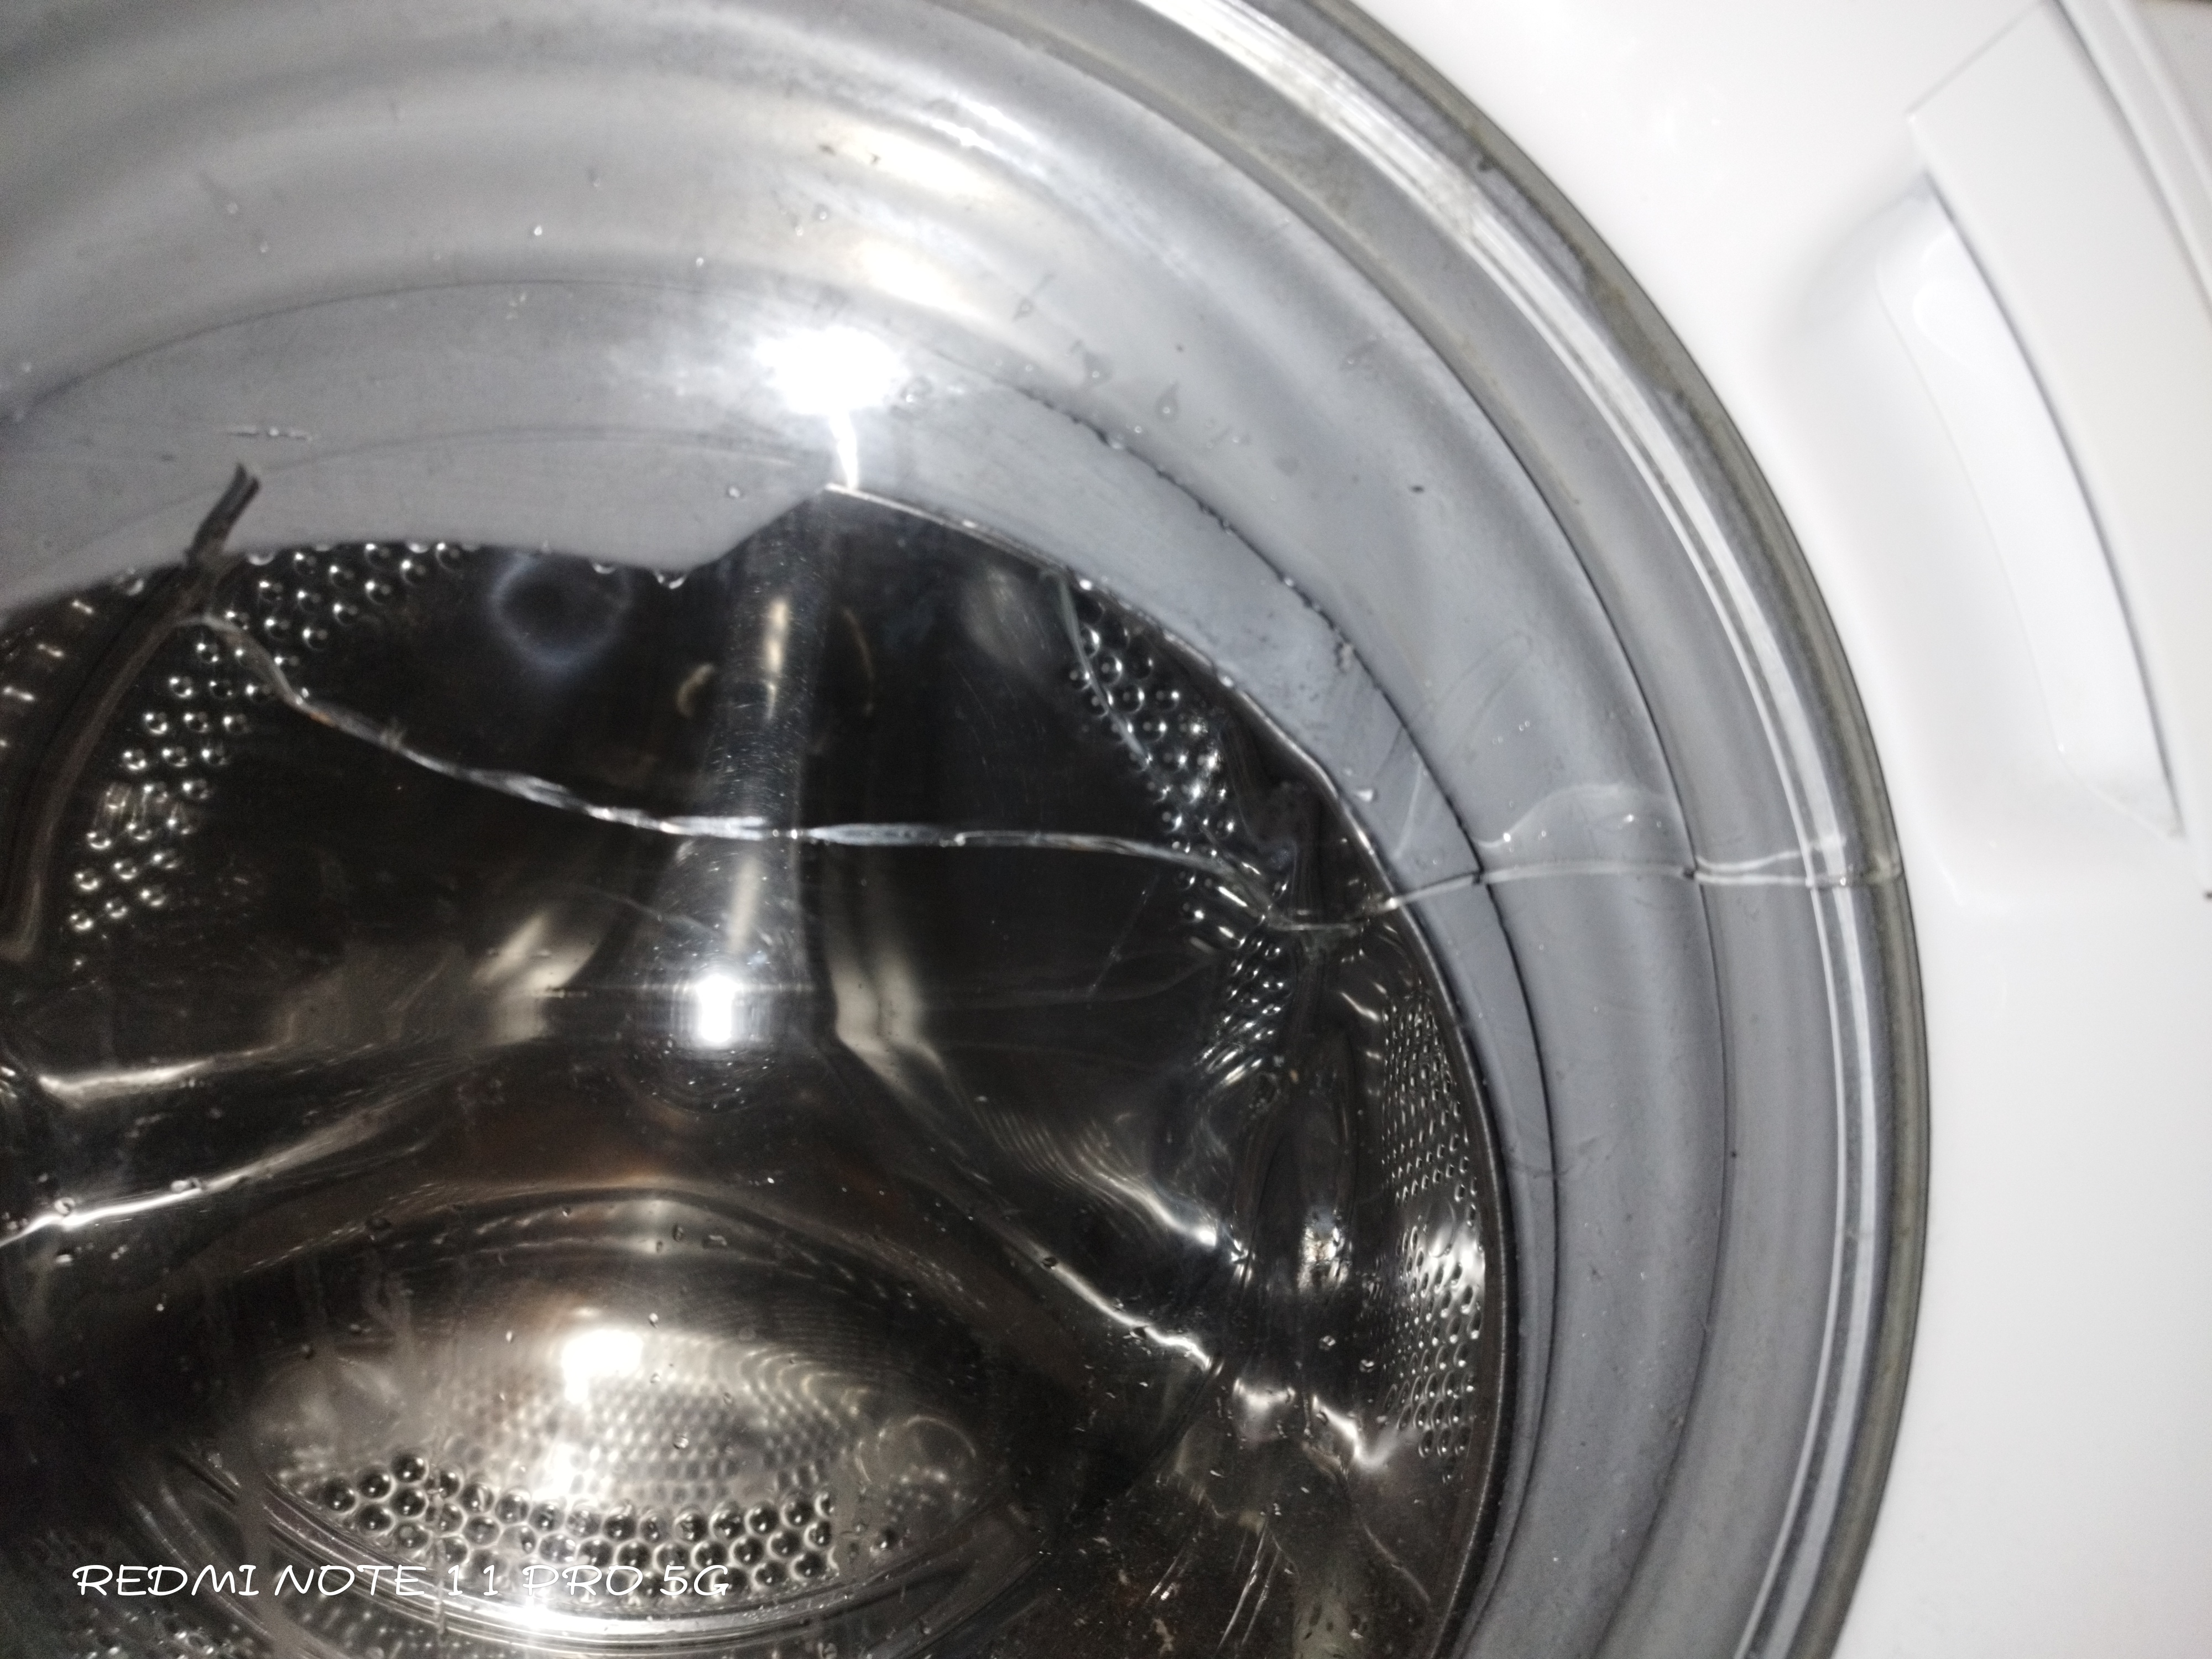 Hei, vi er veldig fornøyd med denne vaskemaskinen, men glasset på døren var sprukket og sprukket. ...